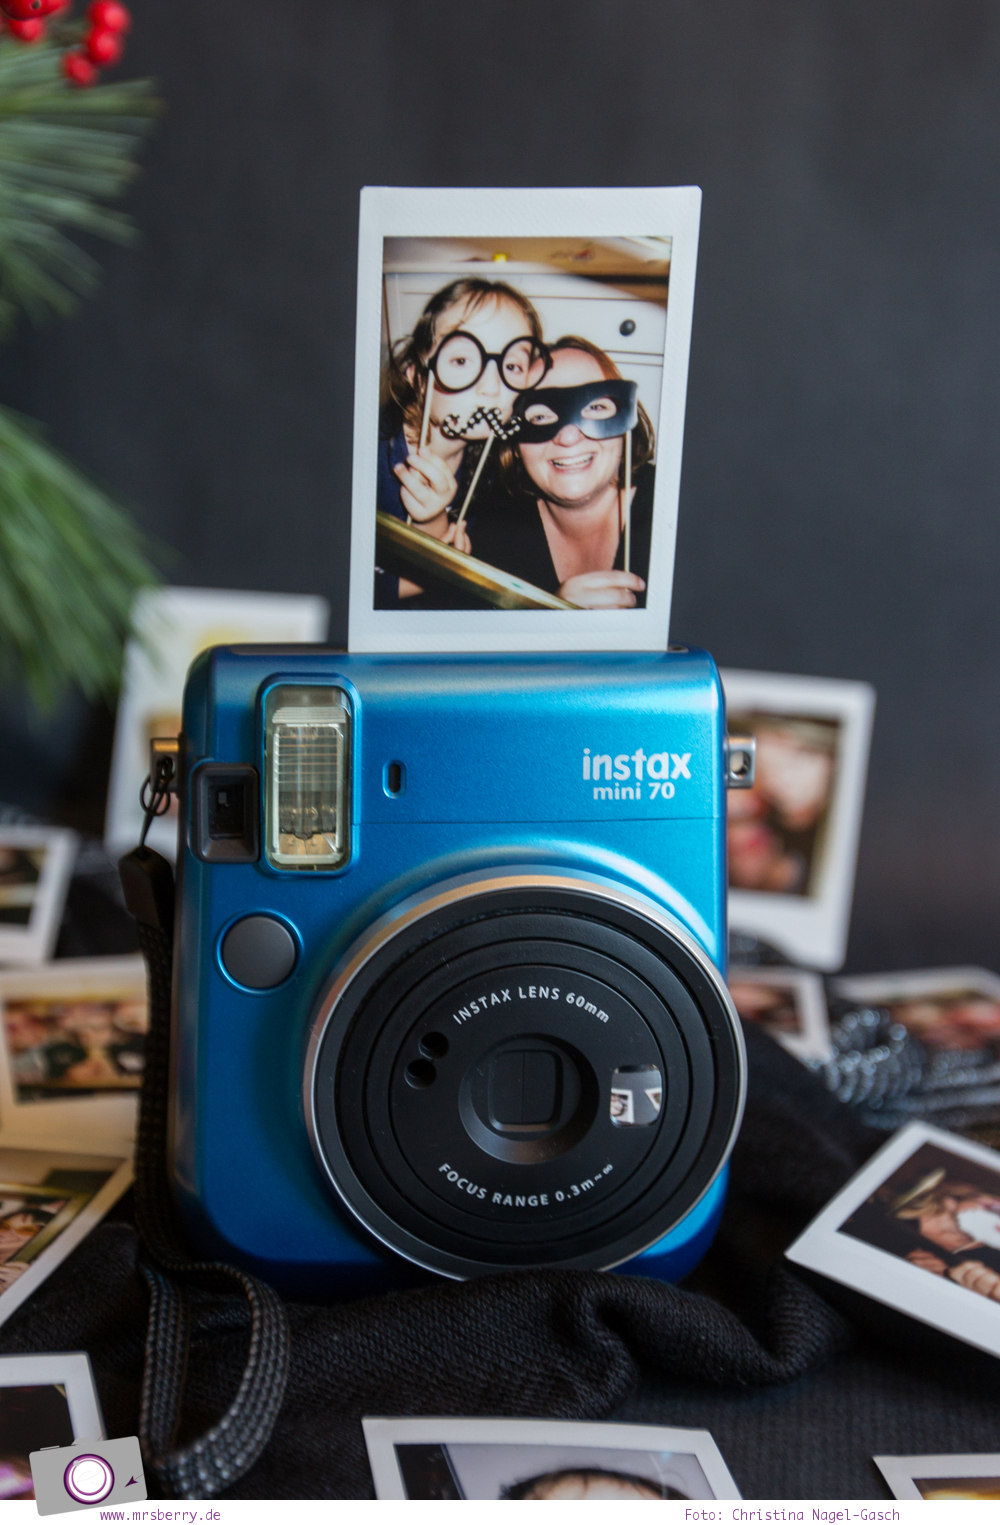 Fuji Instax mini 70 Sofortbildkamera im Photobooth